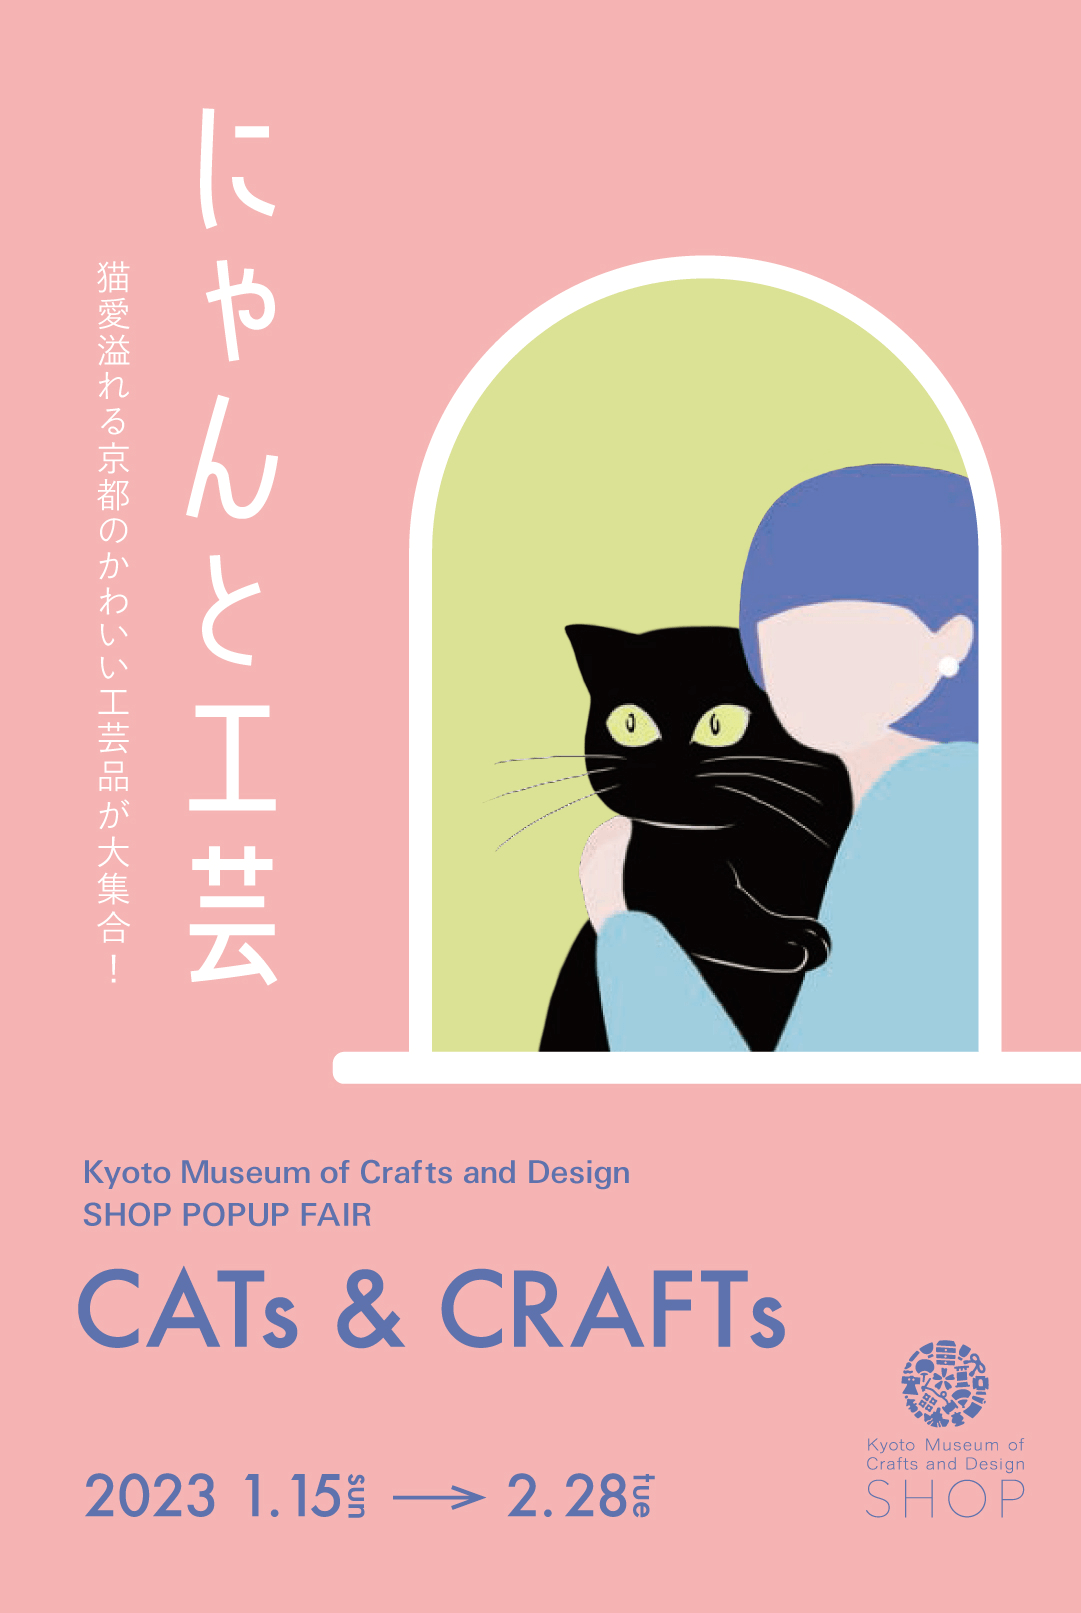 猫モチーフの京都伝統工芸品を展示販売するイベント「にゃんと工芸」